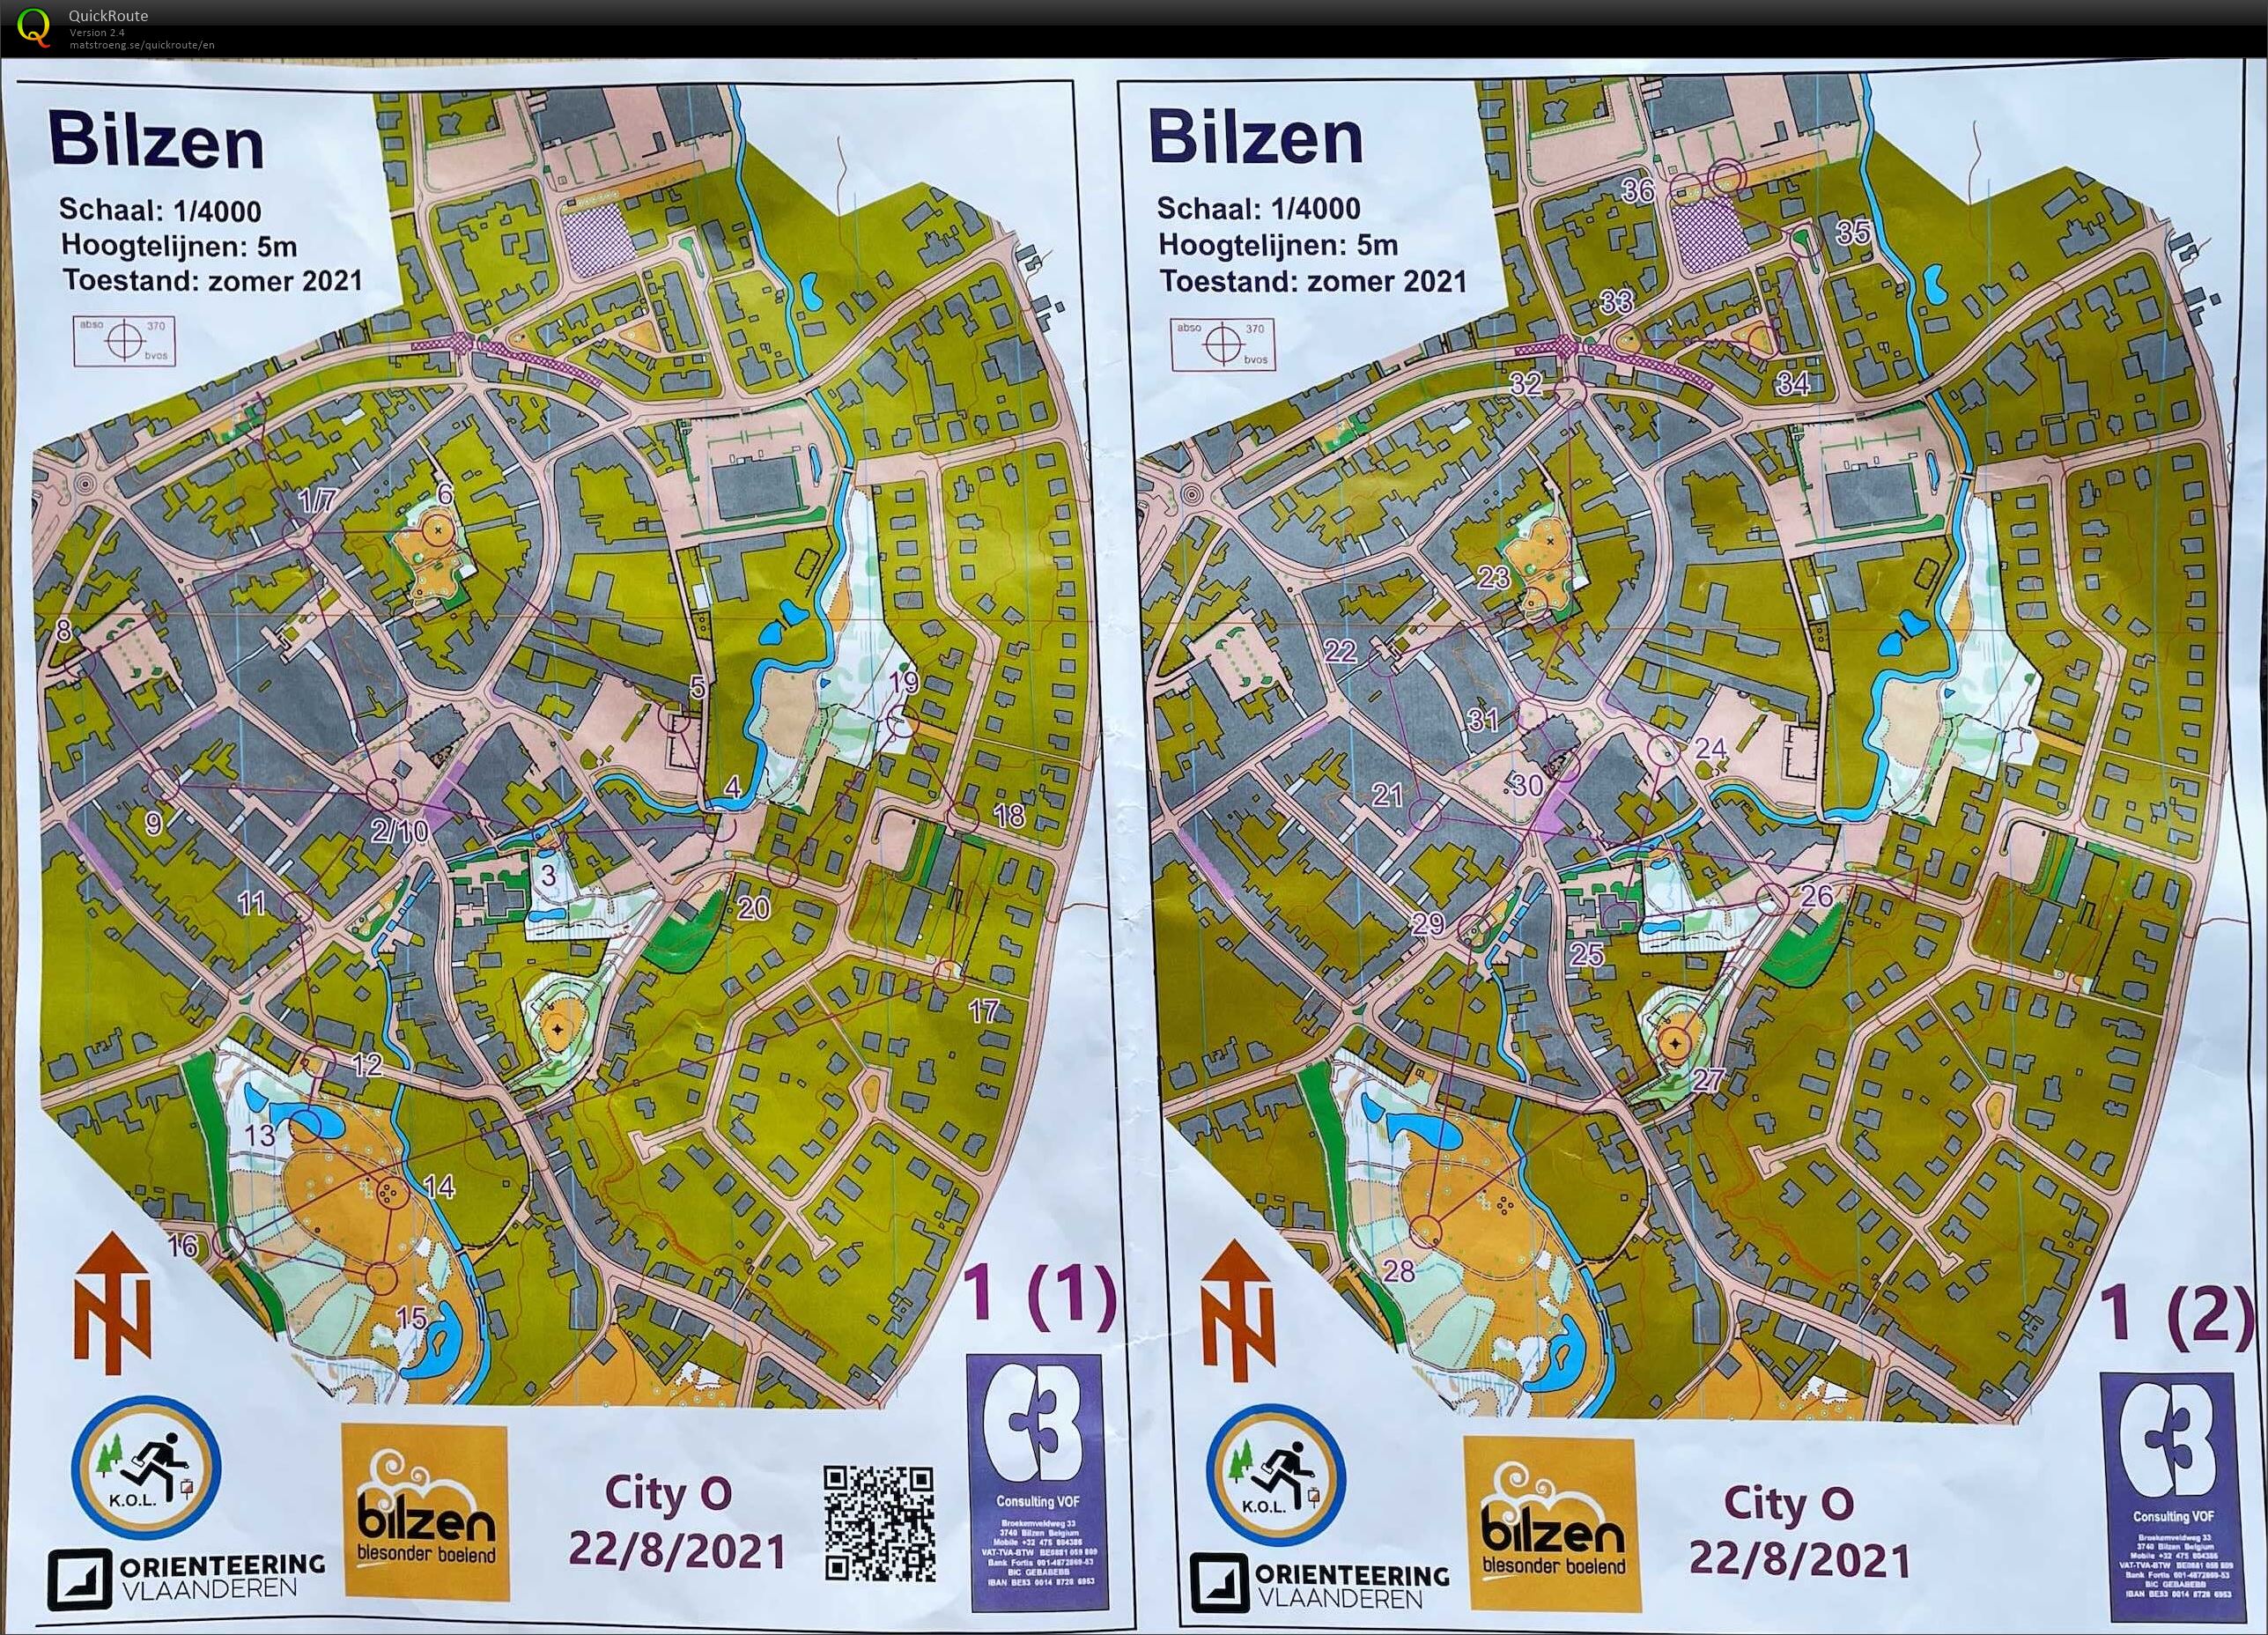 City-O Bilzen (22.08.2021)